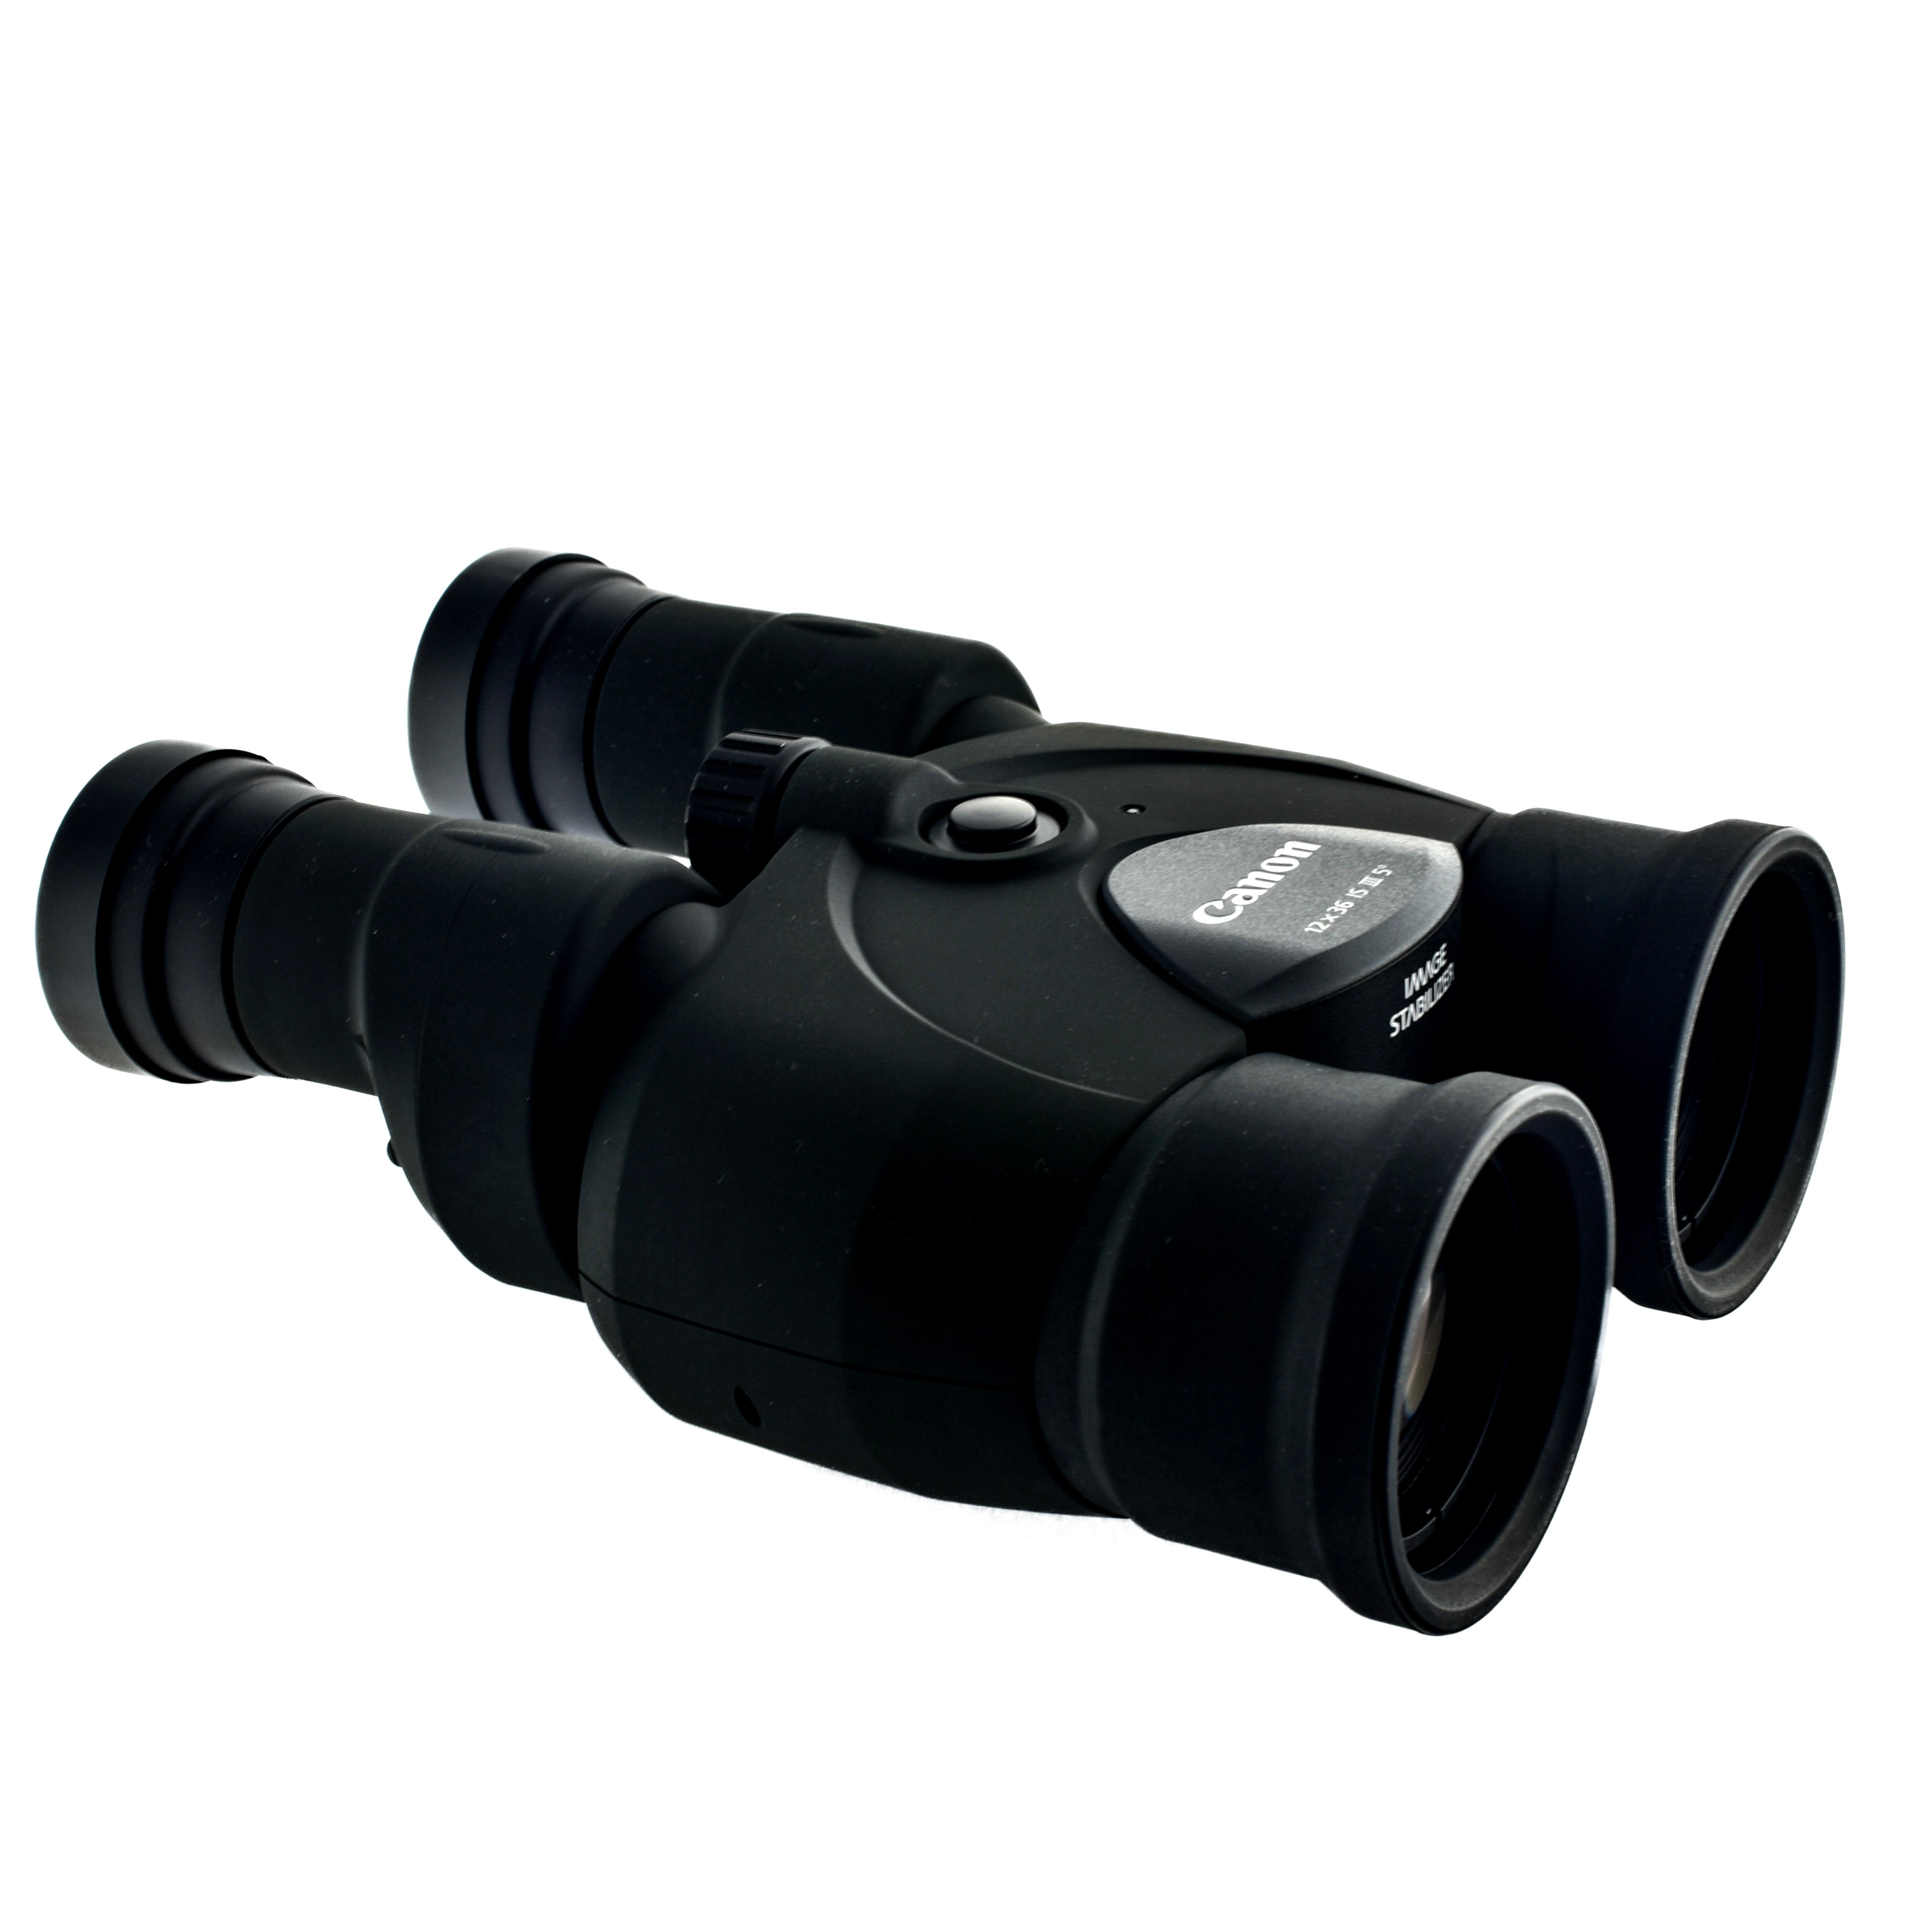 Canon 12 x 36 IS III Image Stabilisation Binoculars (Black)